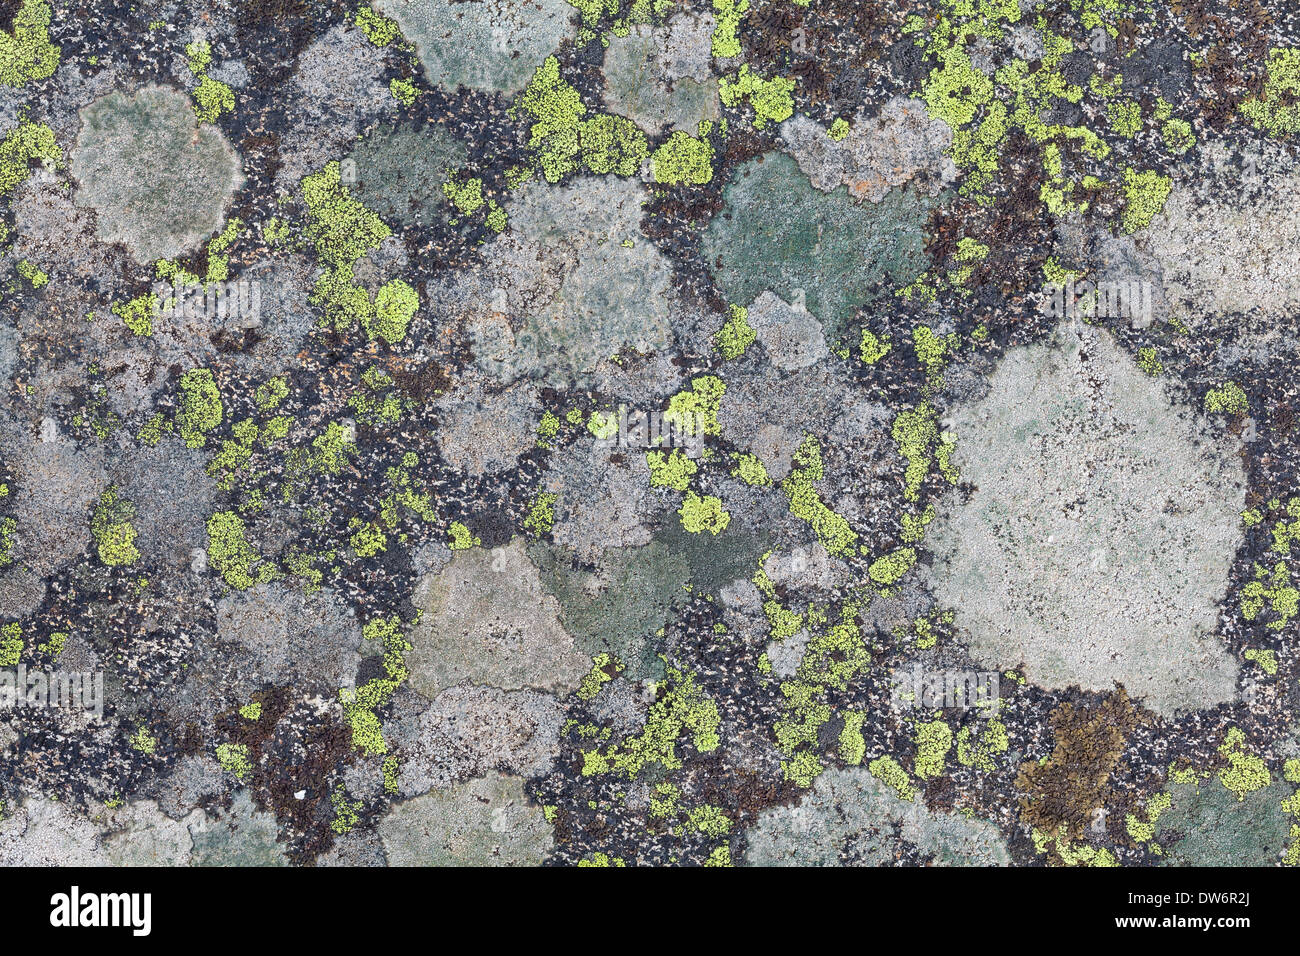 Lichen textures Stock Photo